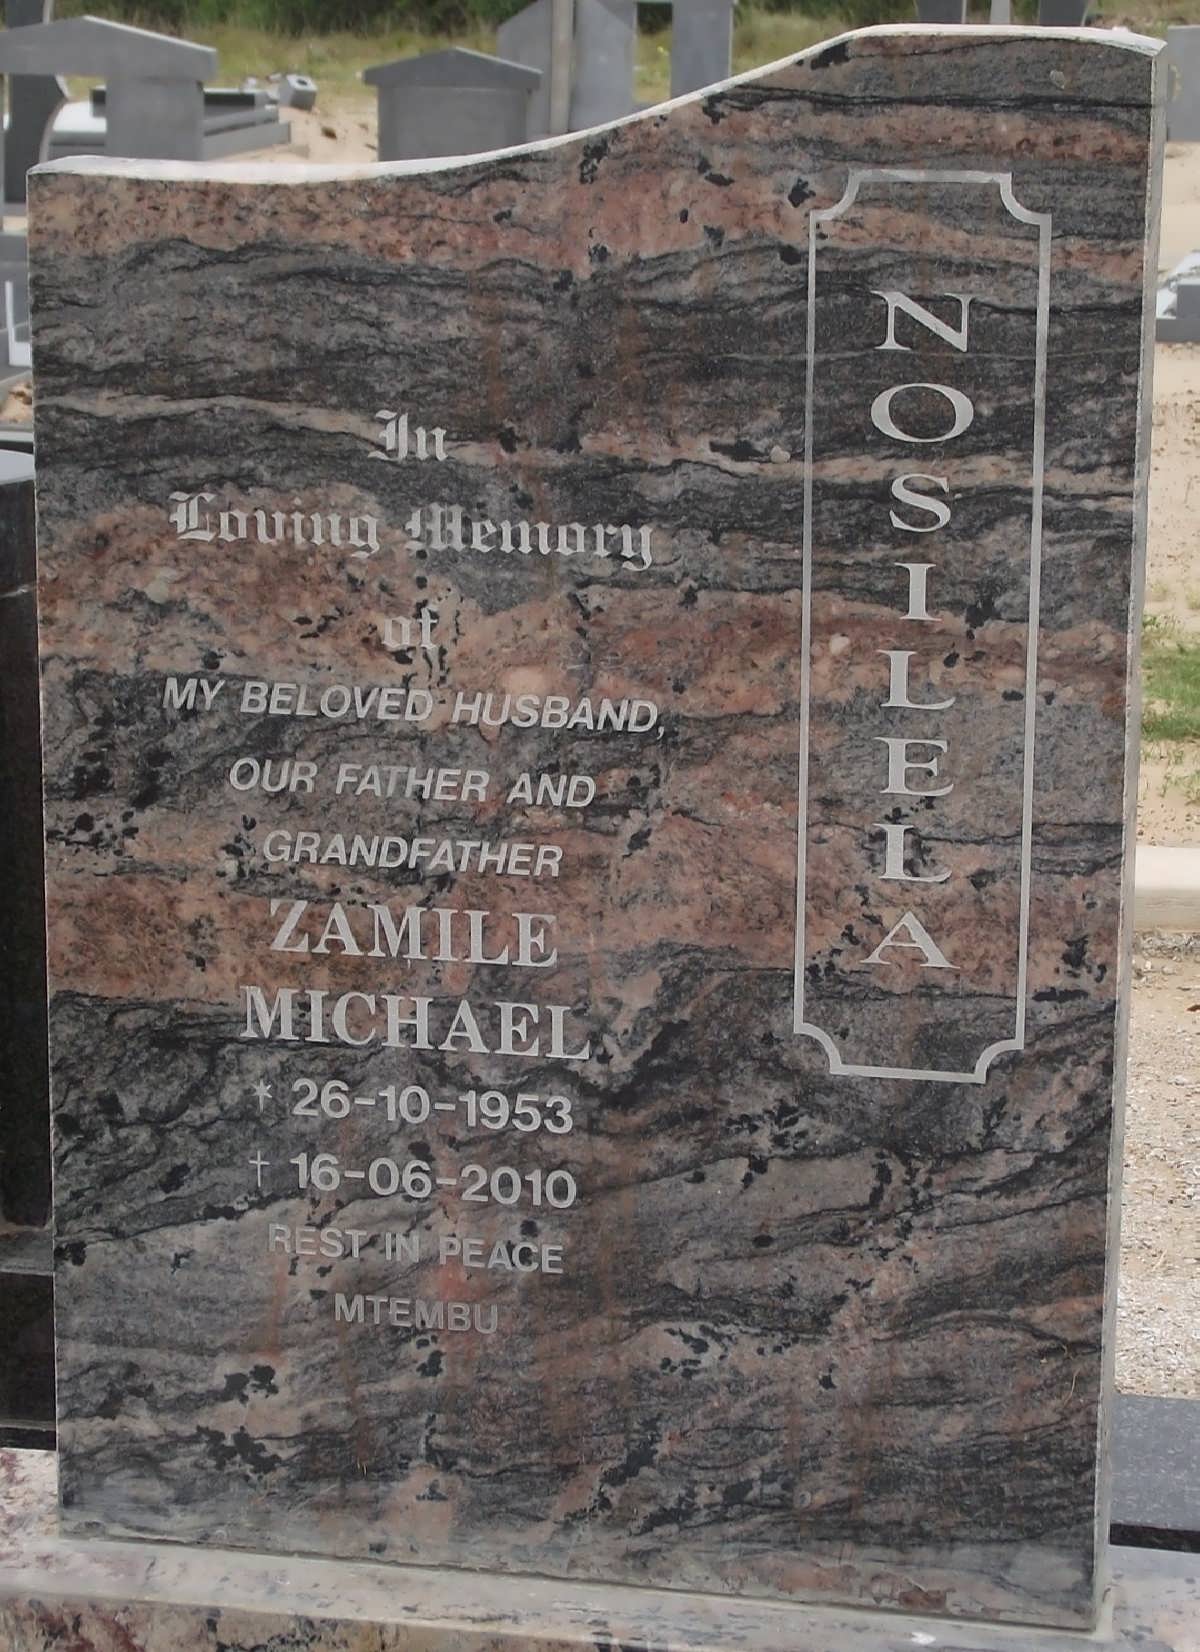 NOSILELA Zamile Michael 1953-2010